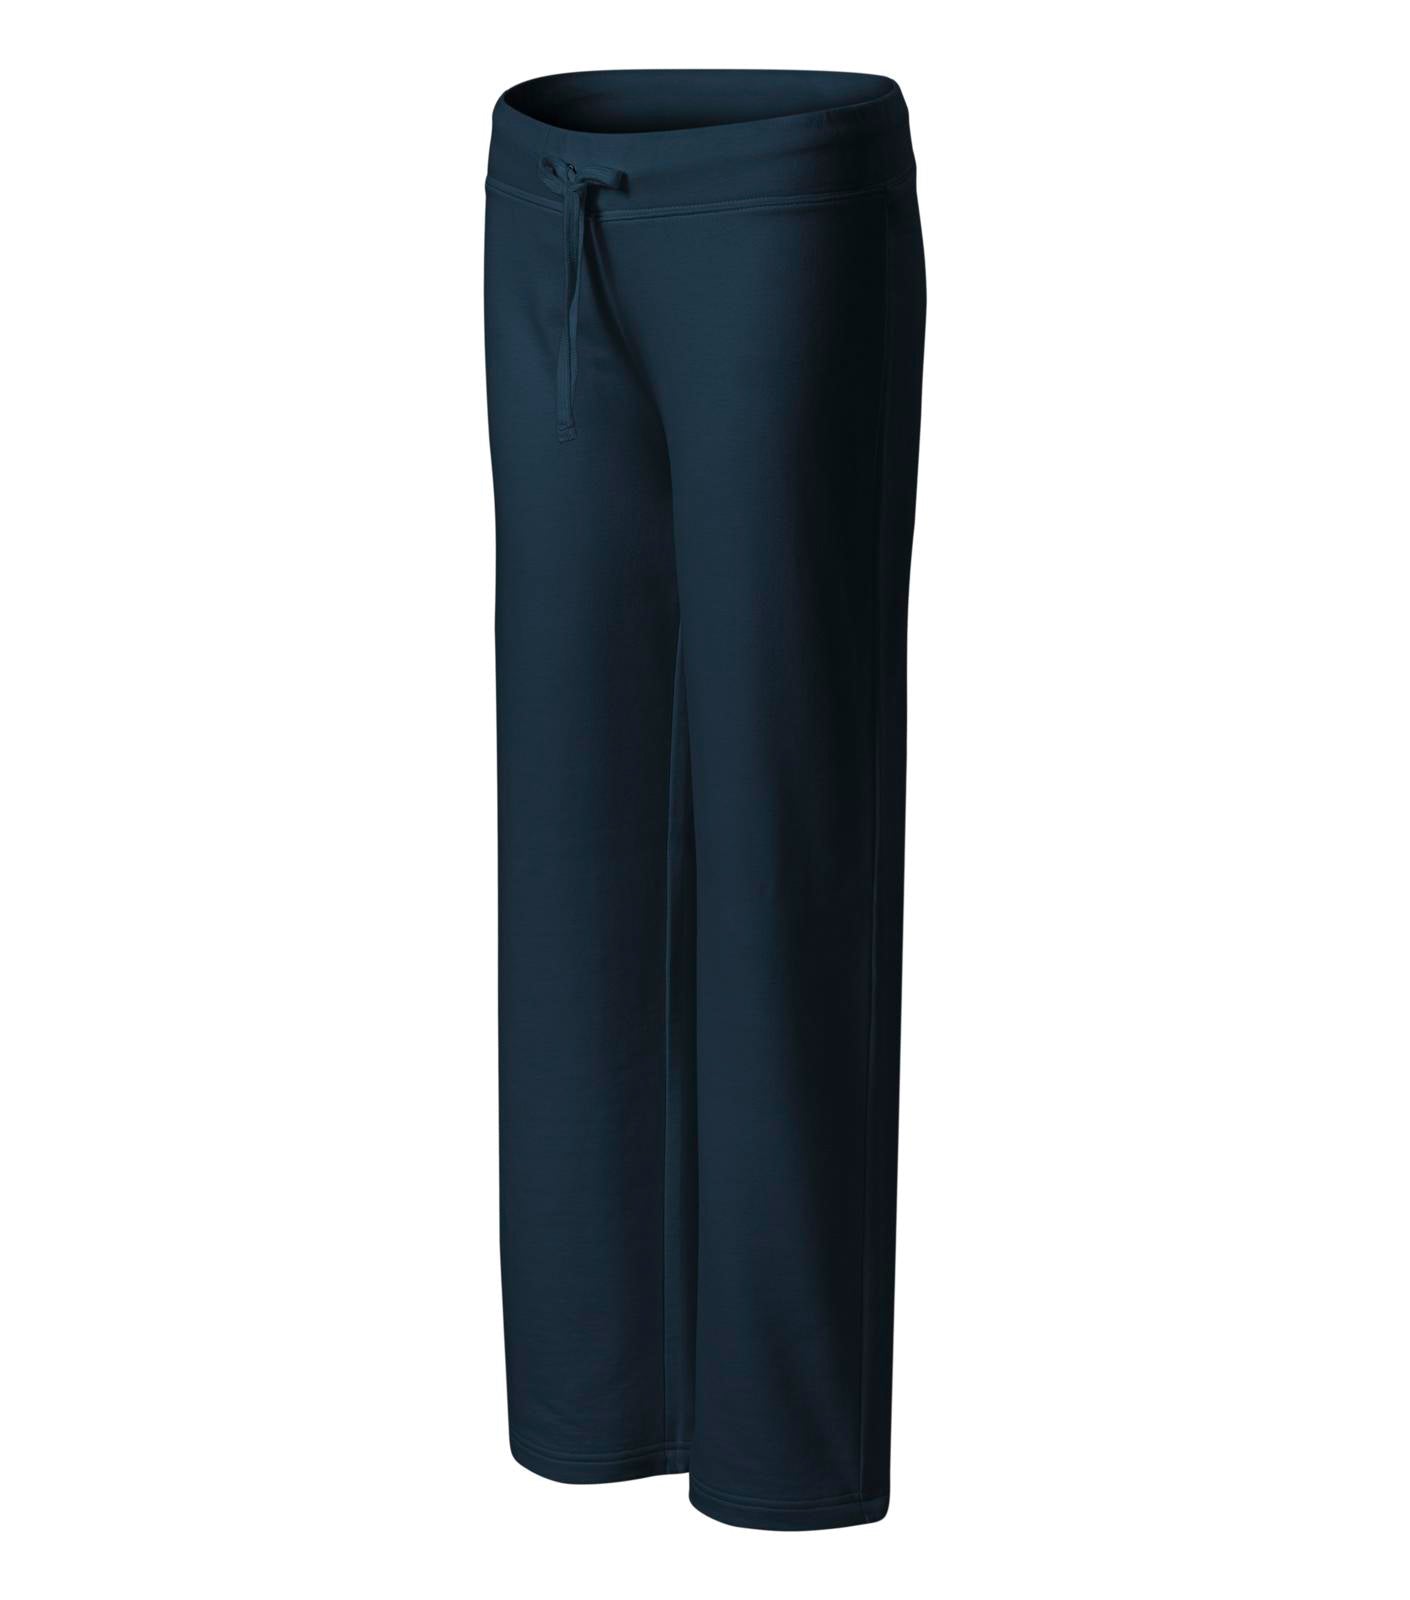 Pantaloni pentru femei in diferite culori si dimensiuni B 1018